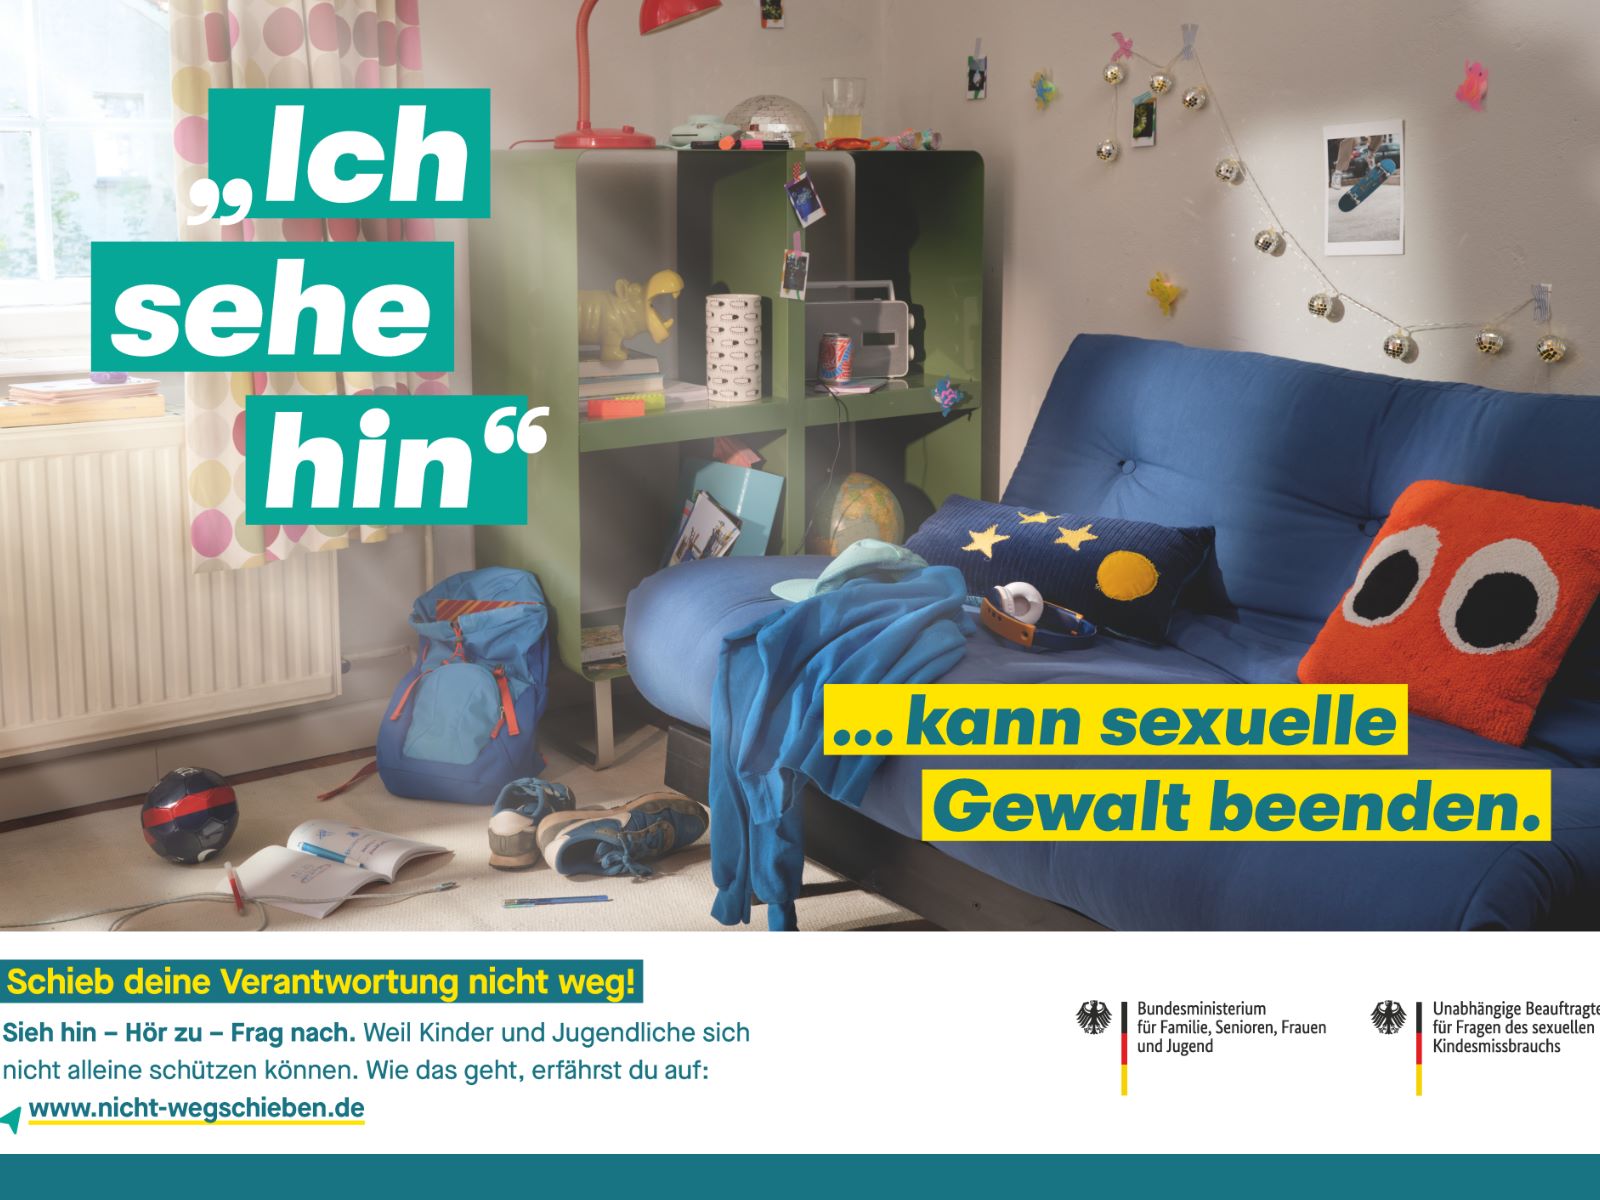 Blick in Kinderzimmer/Jugendzimmer mit dem Schriftzug "Ich sehe hin ...kann sexuelle Gewalt beenden."